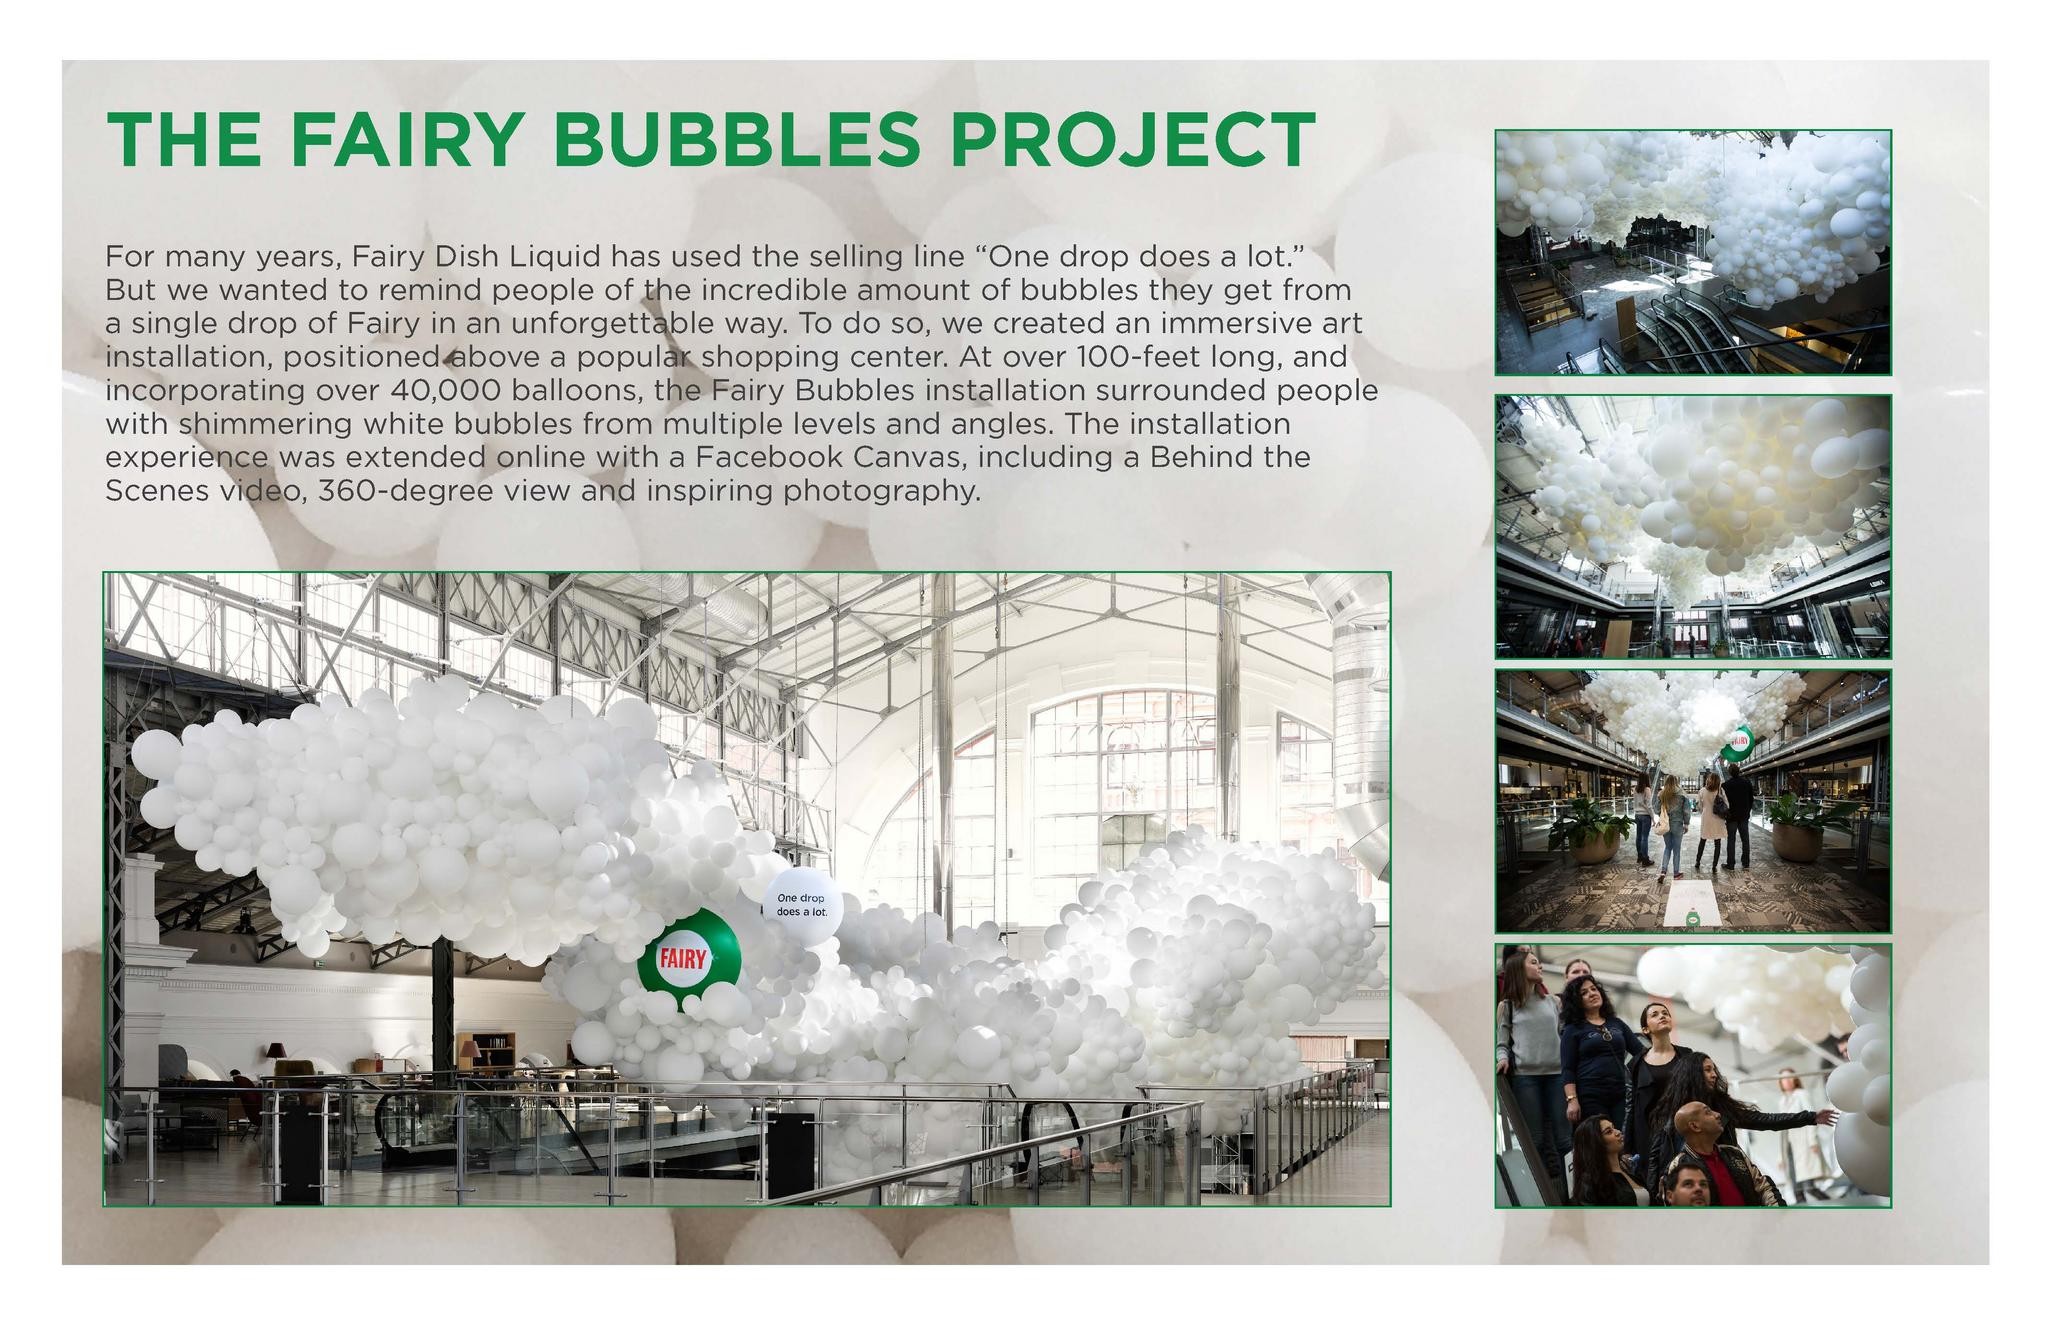 Fairy Bubbles